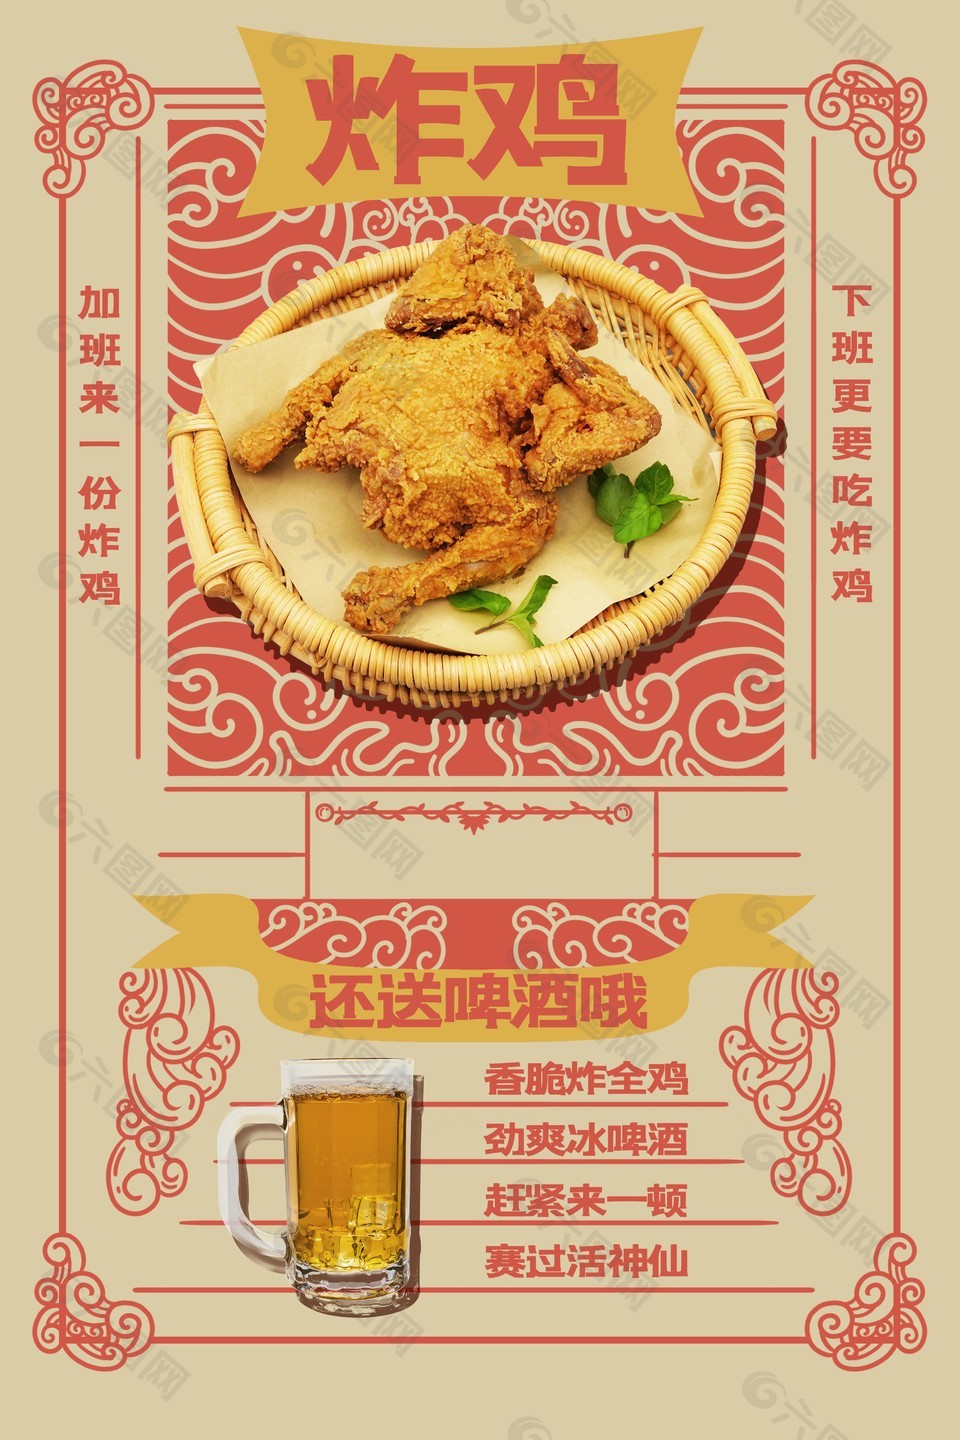 炸鸡美食优惠海报设计